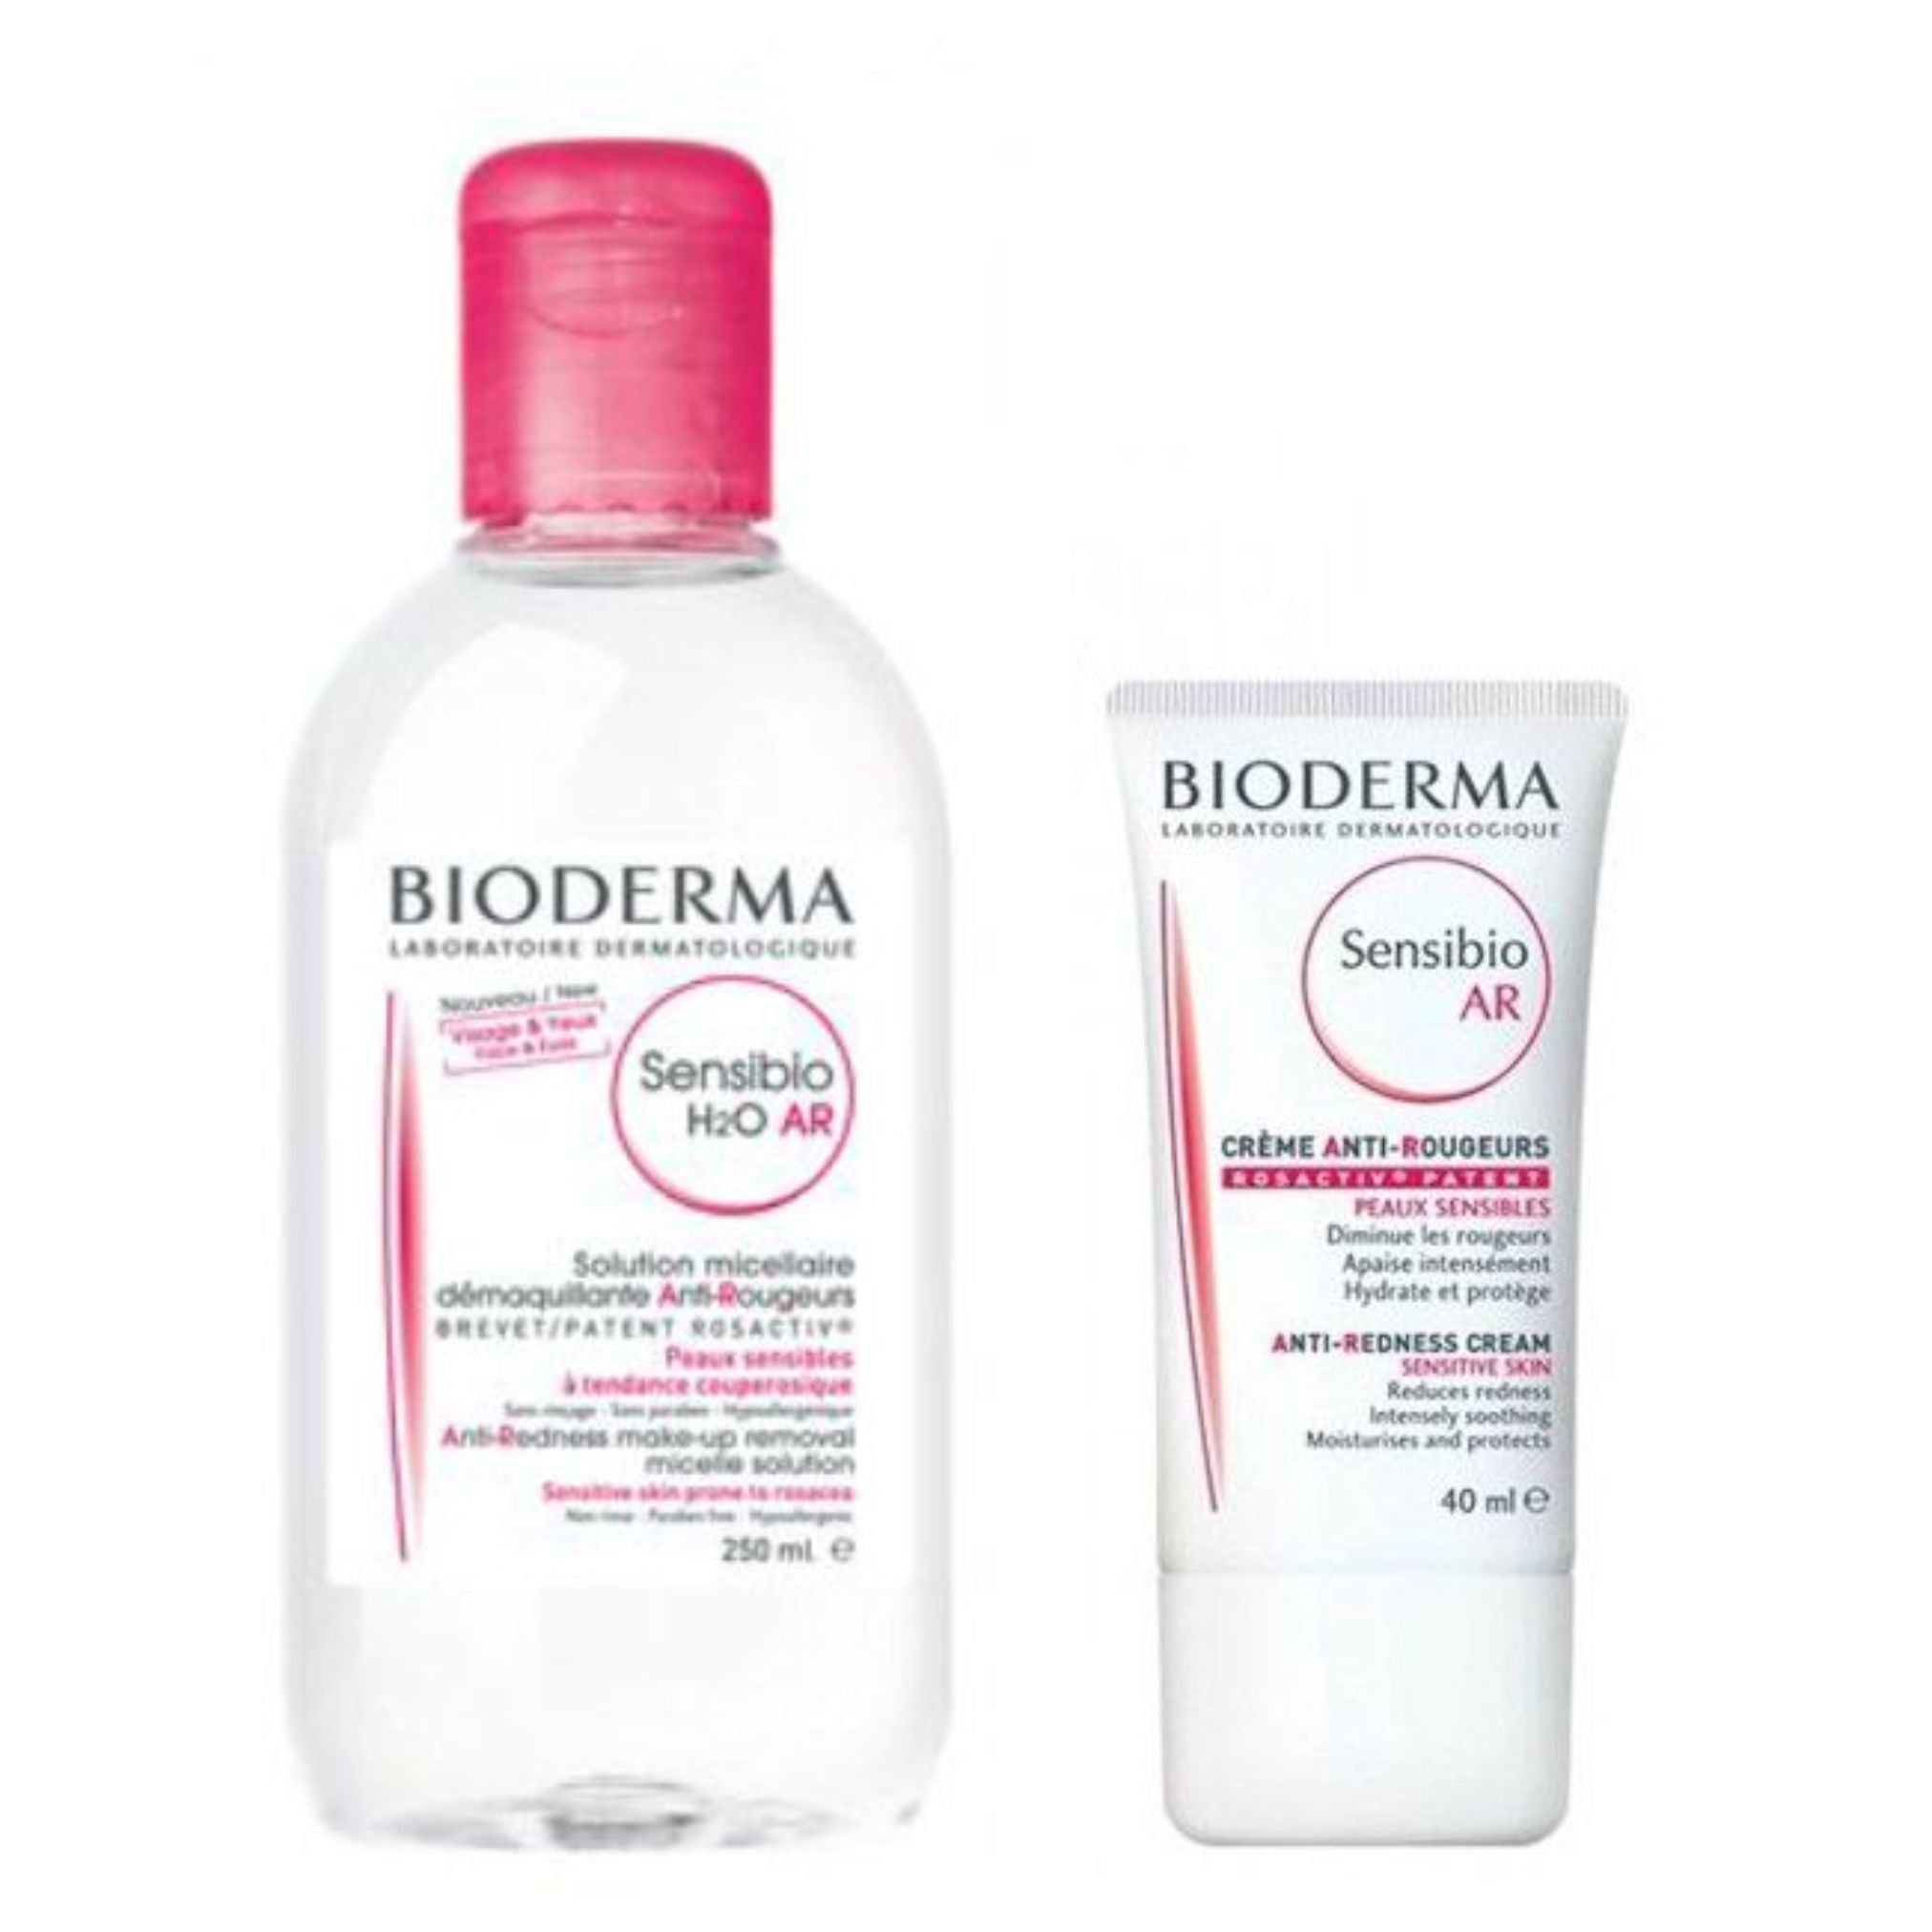 Bioderma Pack Promocional: Bioderma Sensibio AR 40ml + Bioderma Sensibio H2O AR Água Micelar 250ml